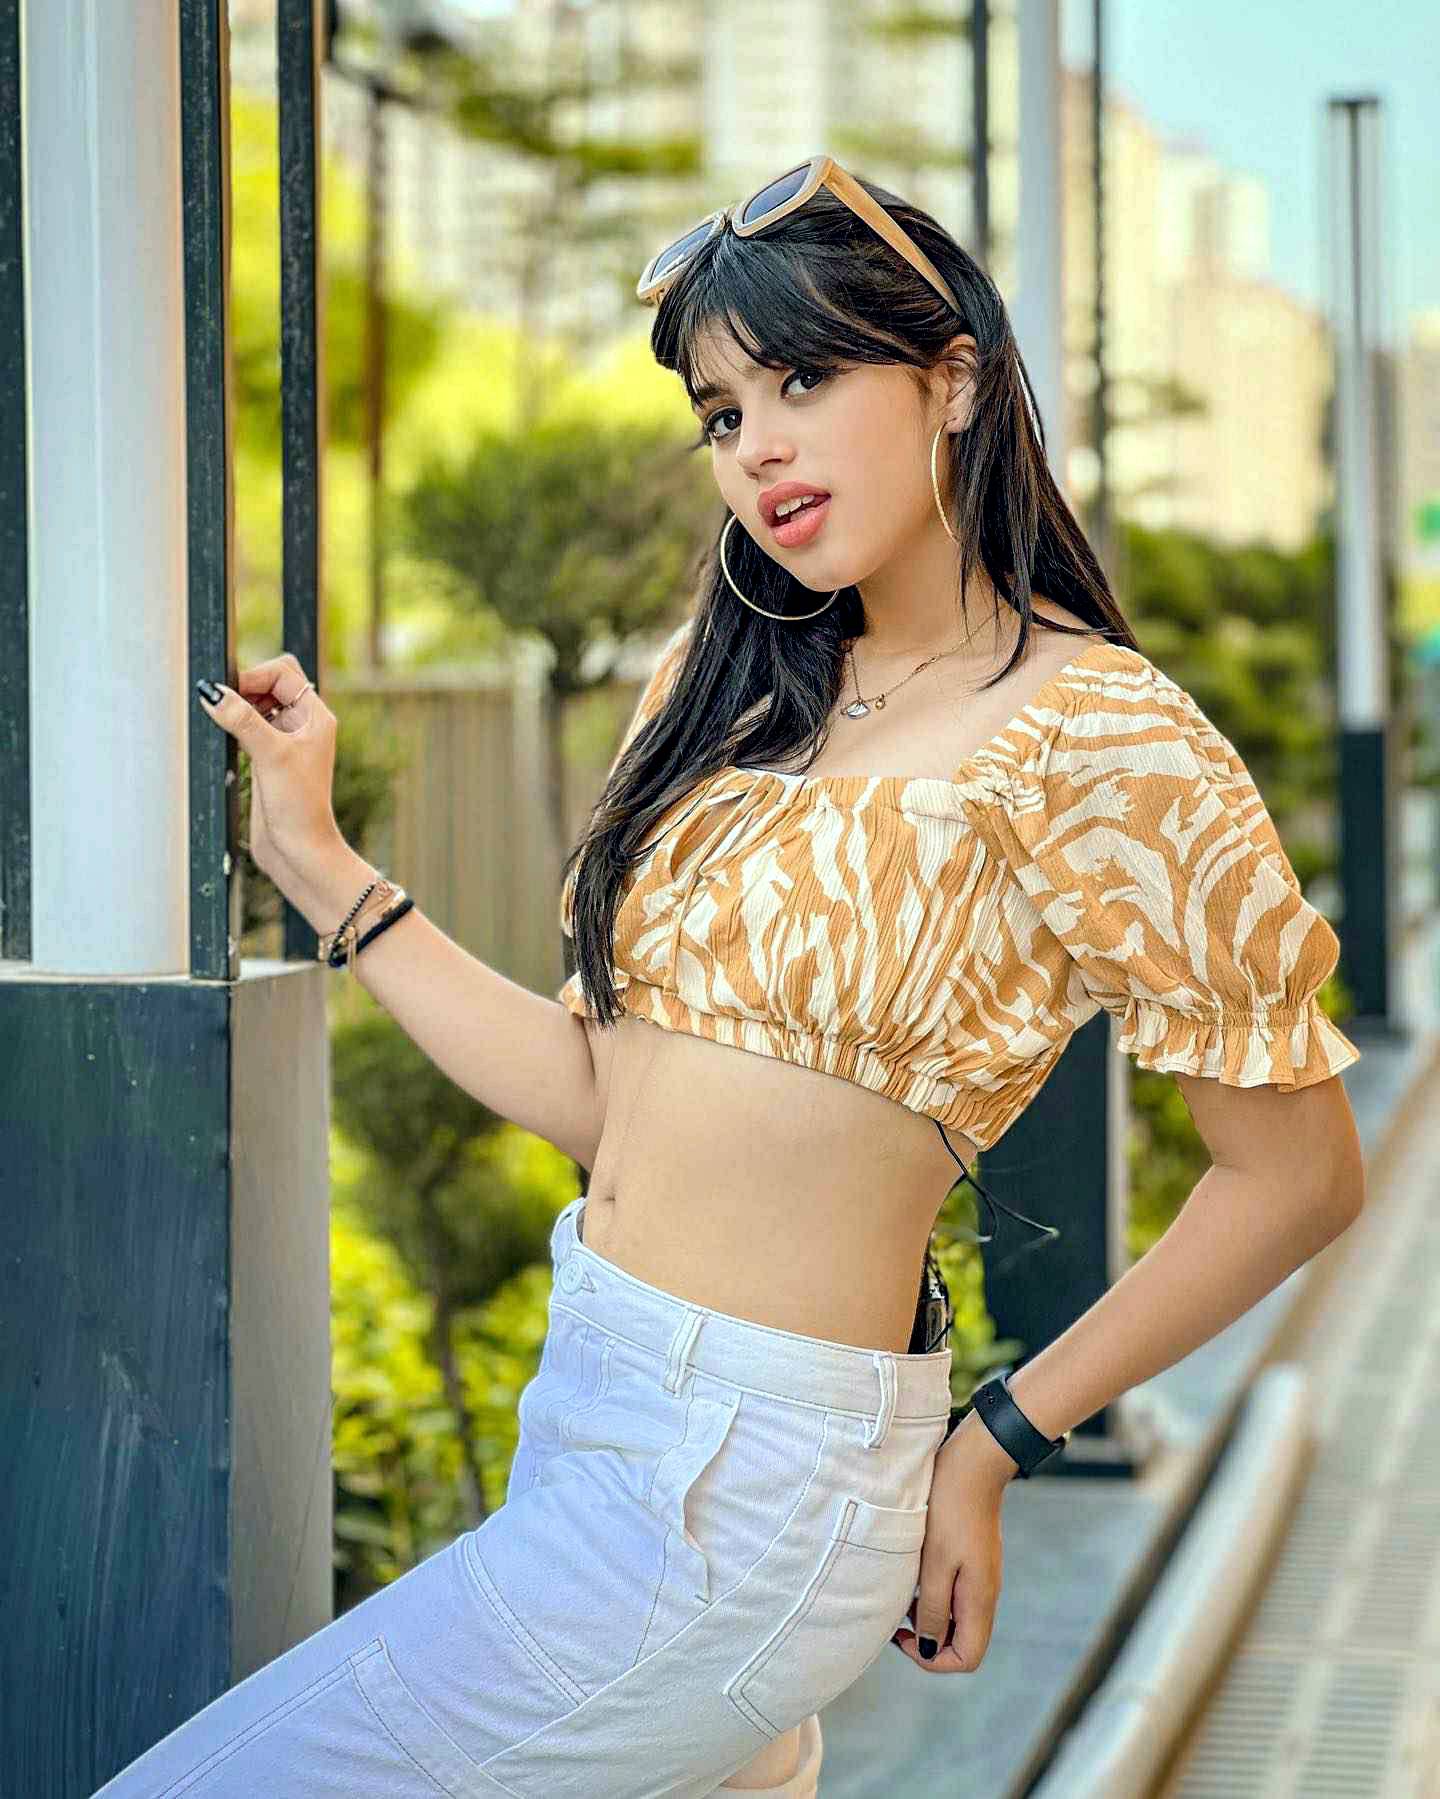 indian teen model and actress Riva Arora cute hot photos